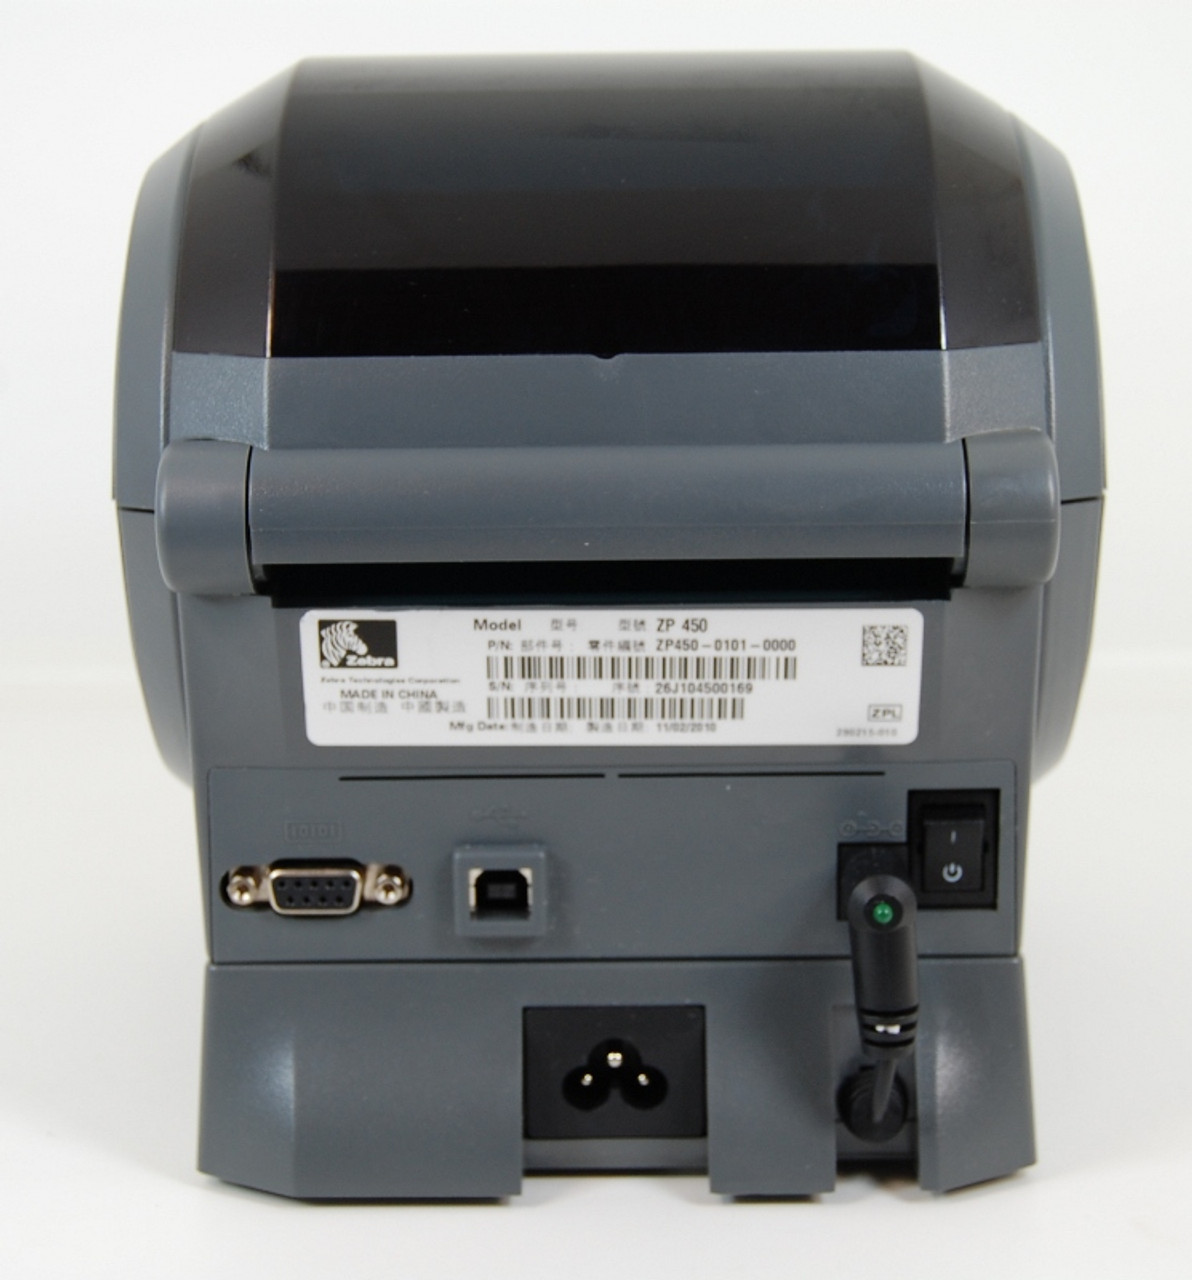 Zebra ZP450 Thermal Label Printer - Porter Electronics